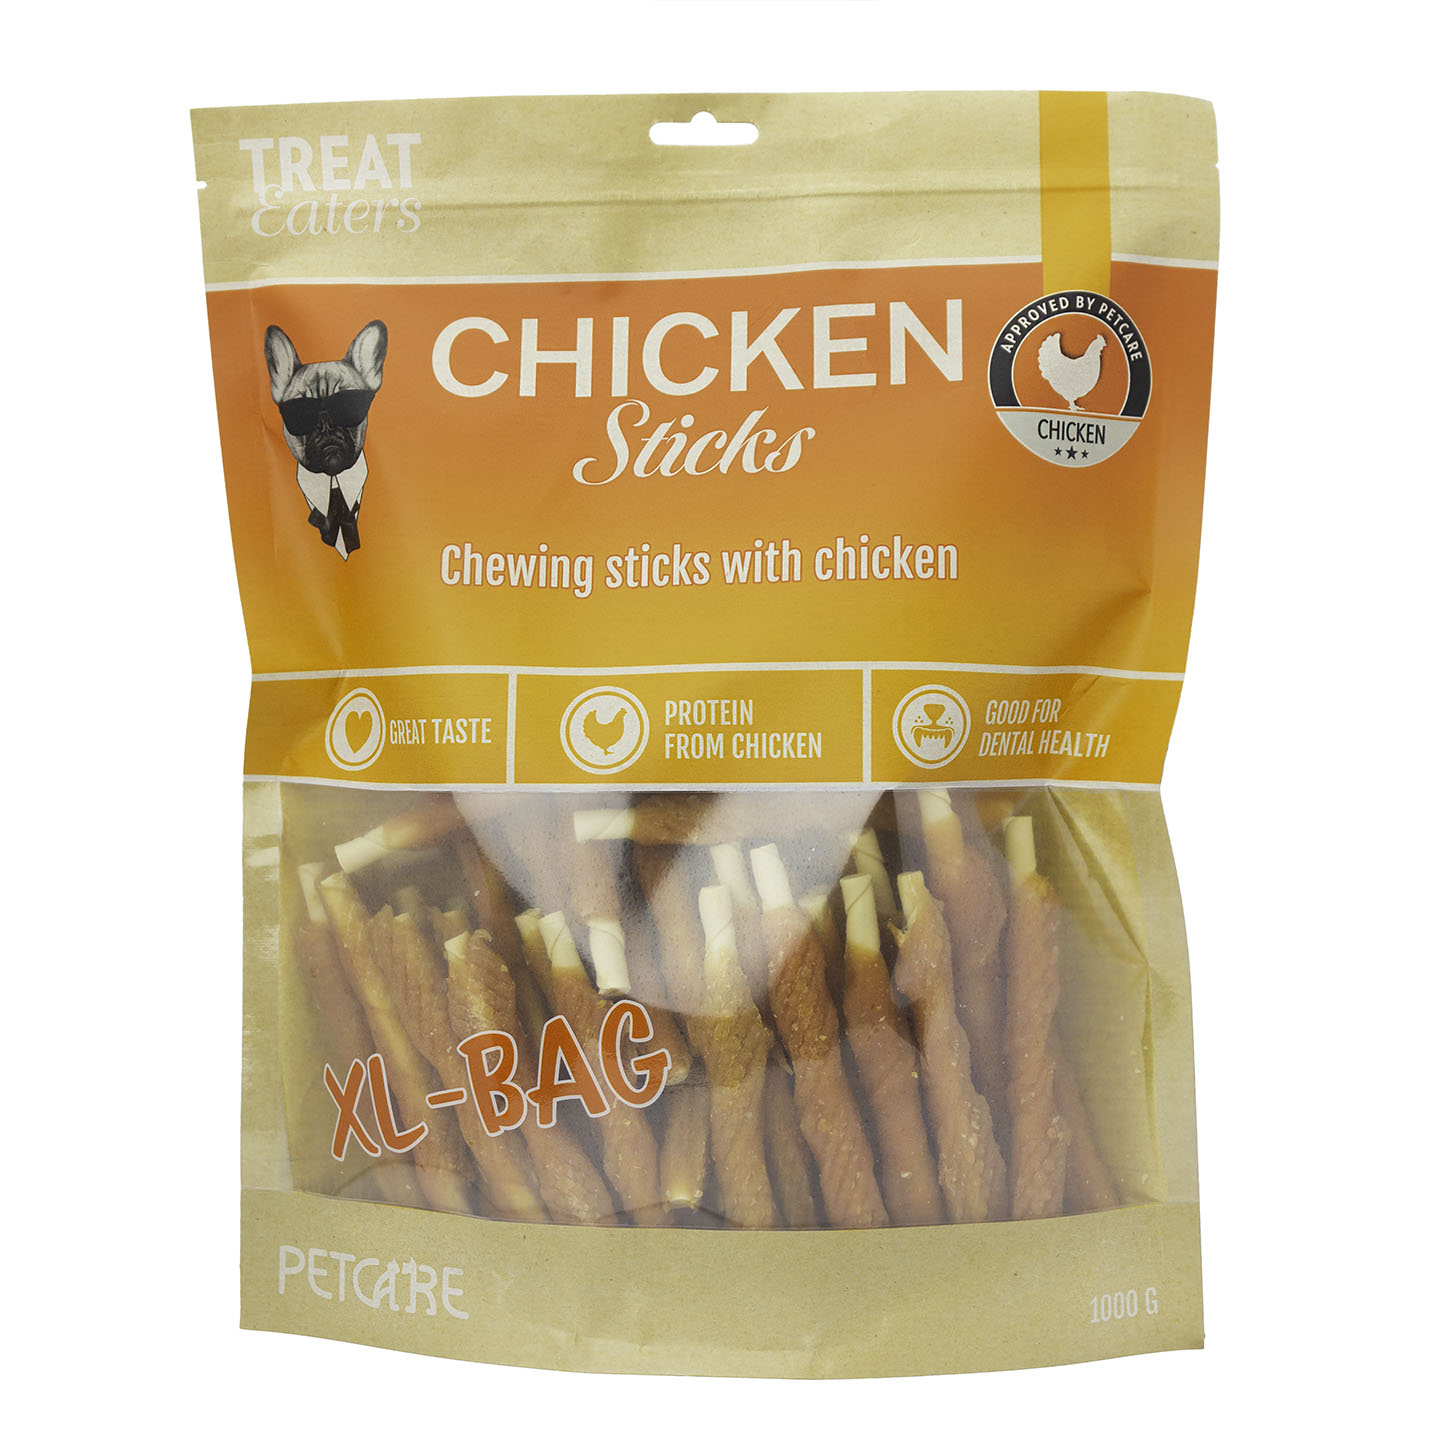 Billede af Petcare - Treateaters Chicken Sticks XL Pose 1000g - Dog Treats